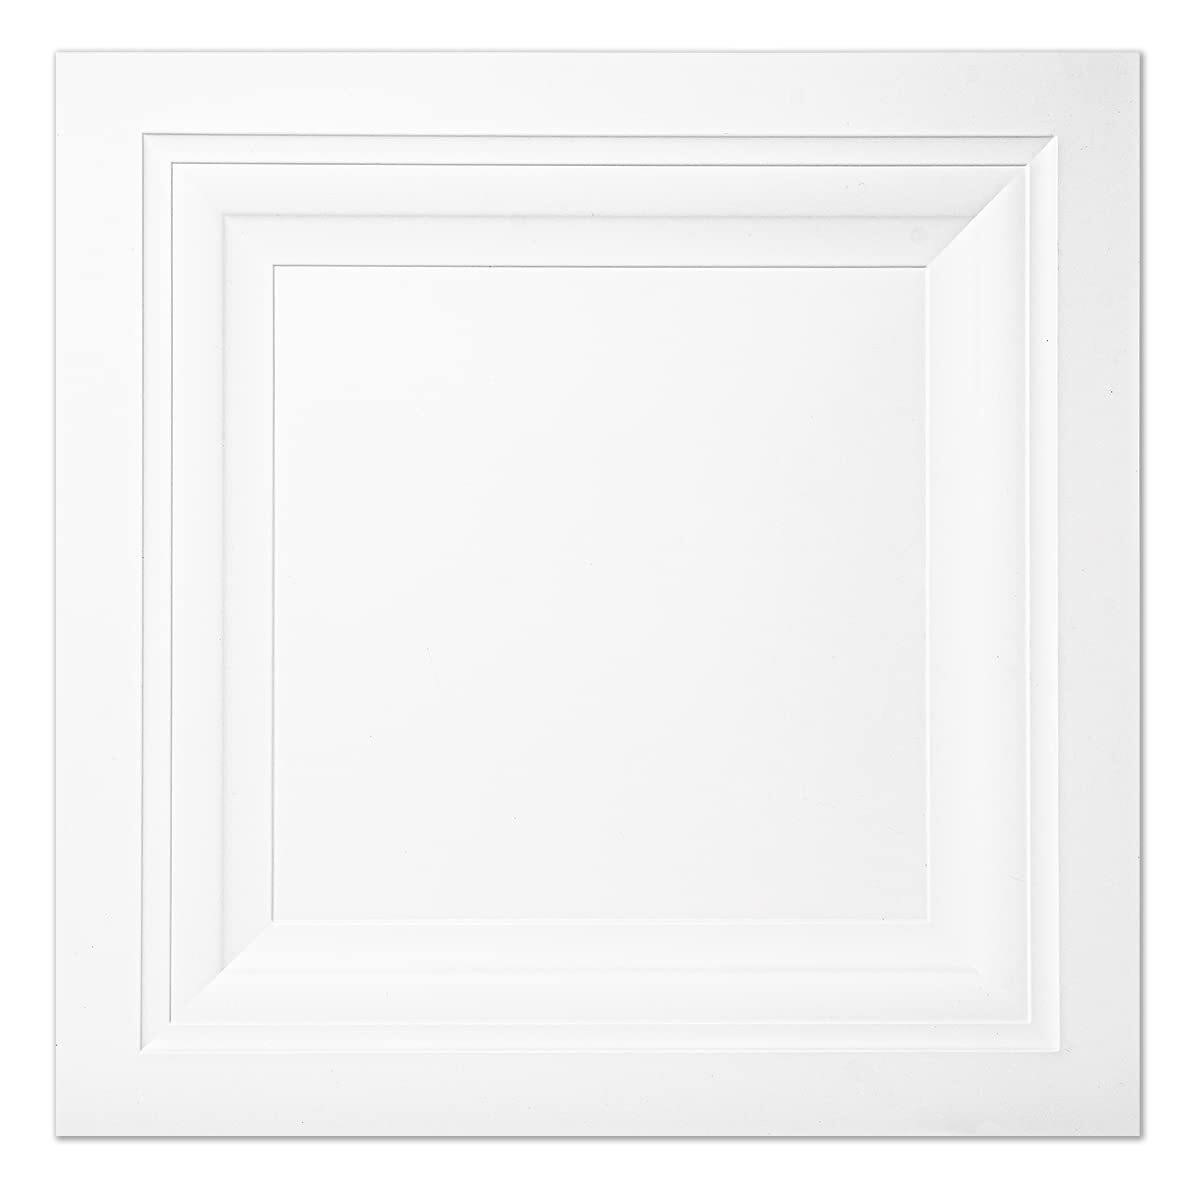 Art3d 12-Pack 2ft x 2ft White Ceiling Tile